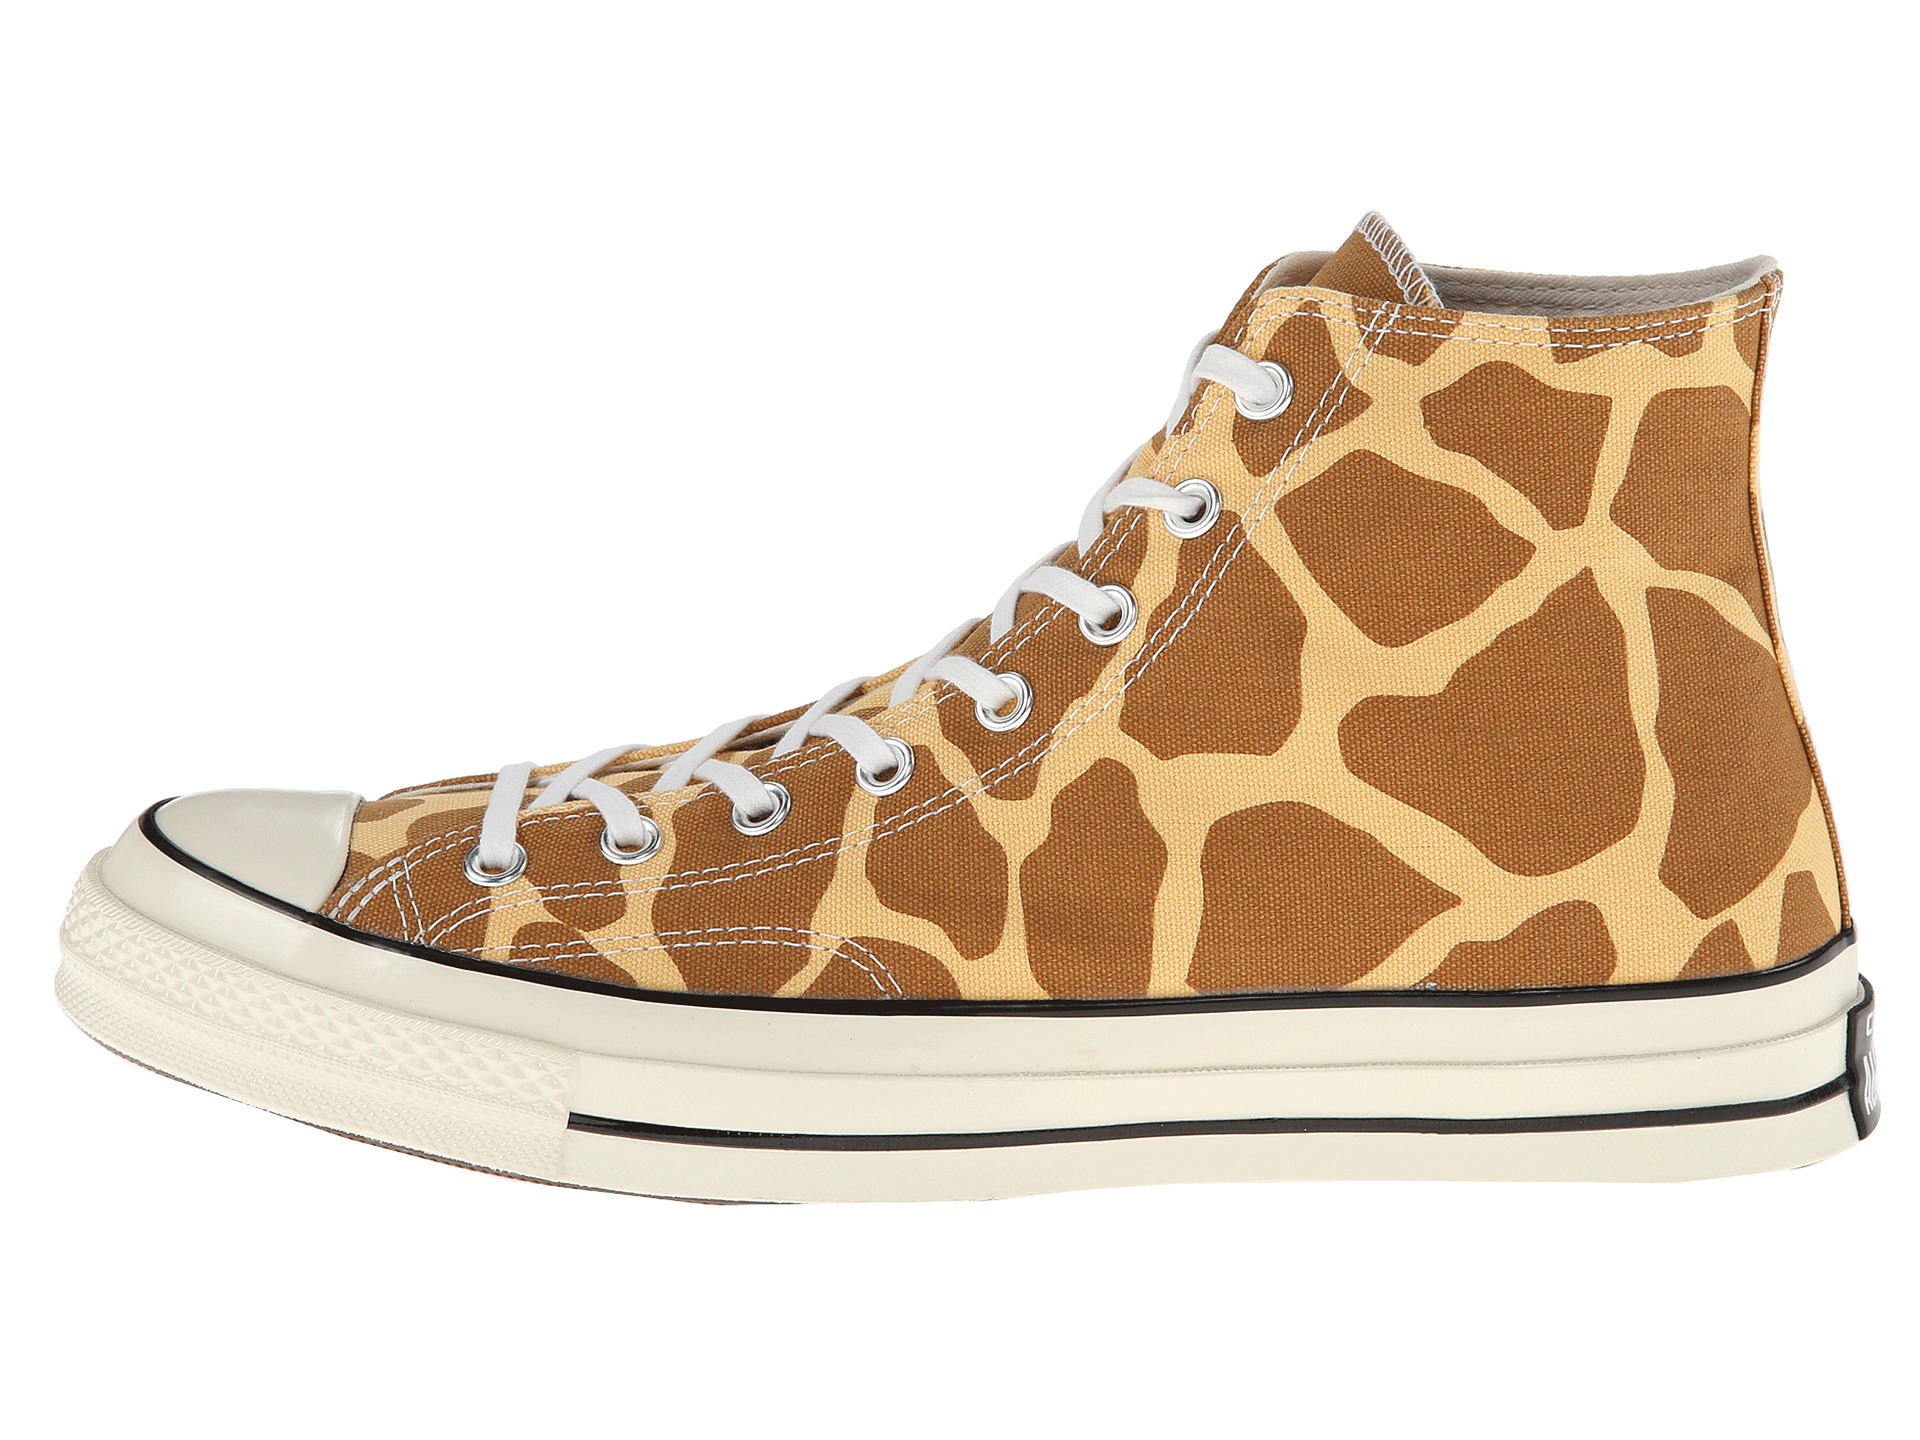 Converse Chuck Taylor All Star 70 Hi Giraffe | Shipped Free at Zappos